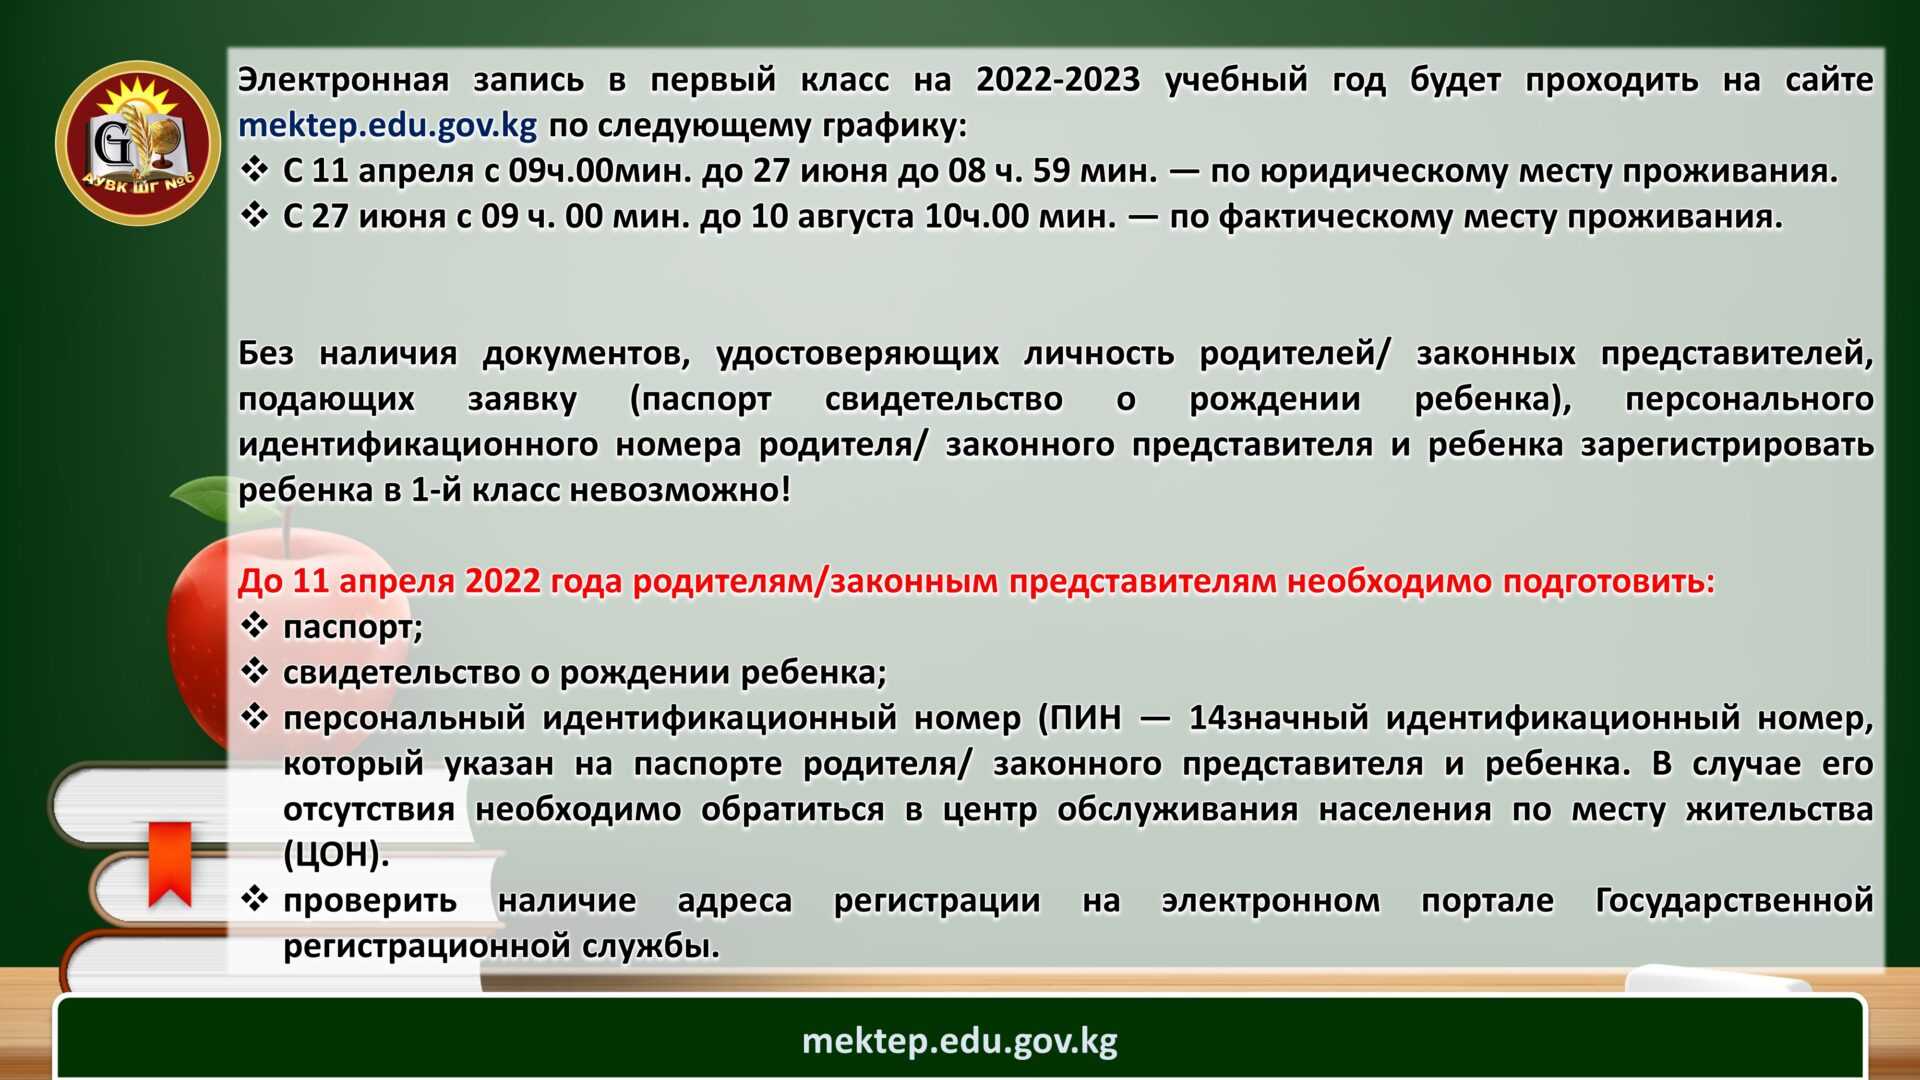 План работы родительского комитета школы на 2022 2023 учебный год с протоколами